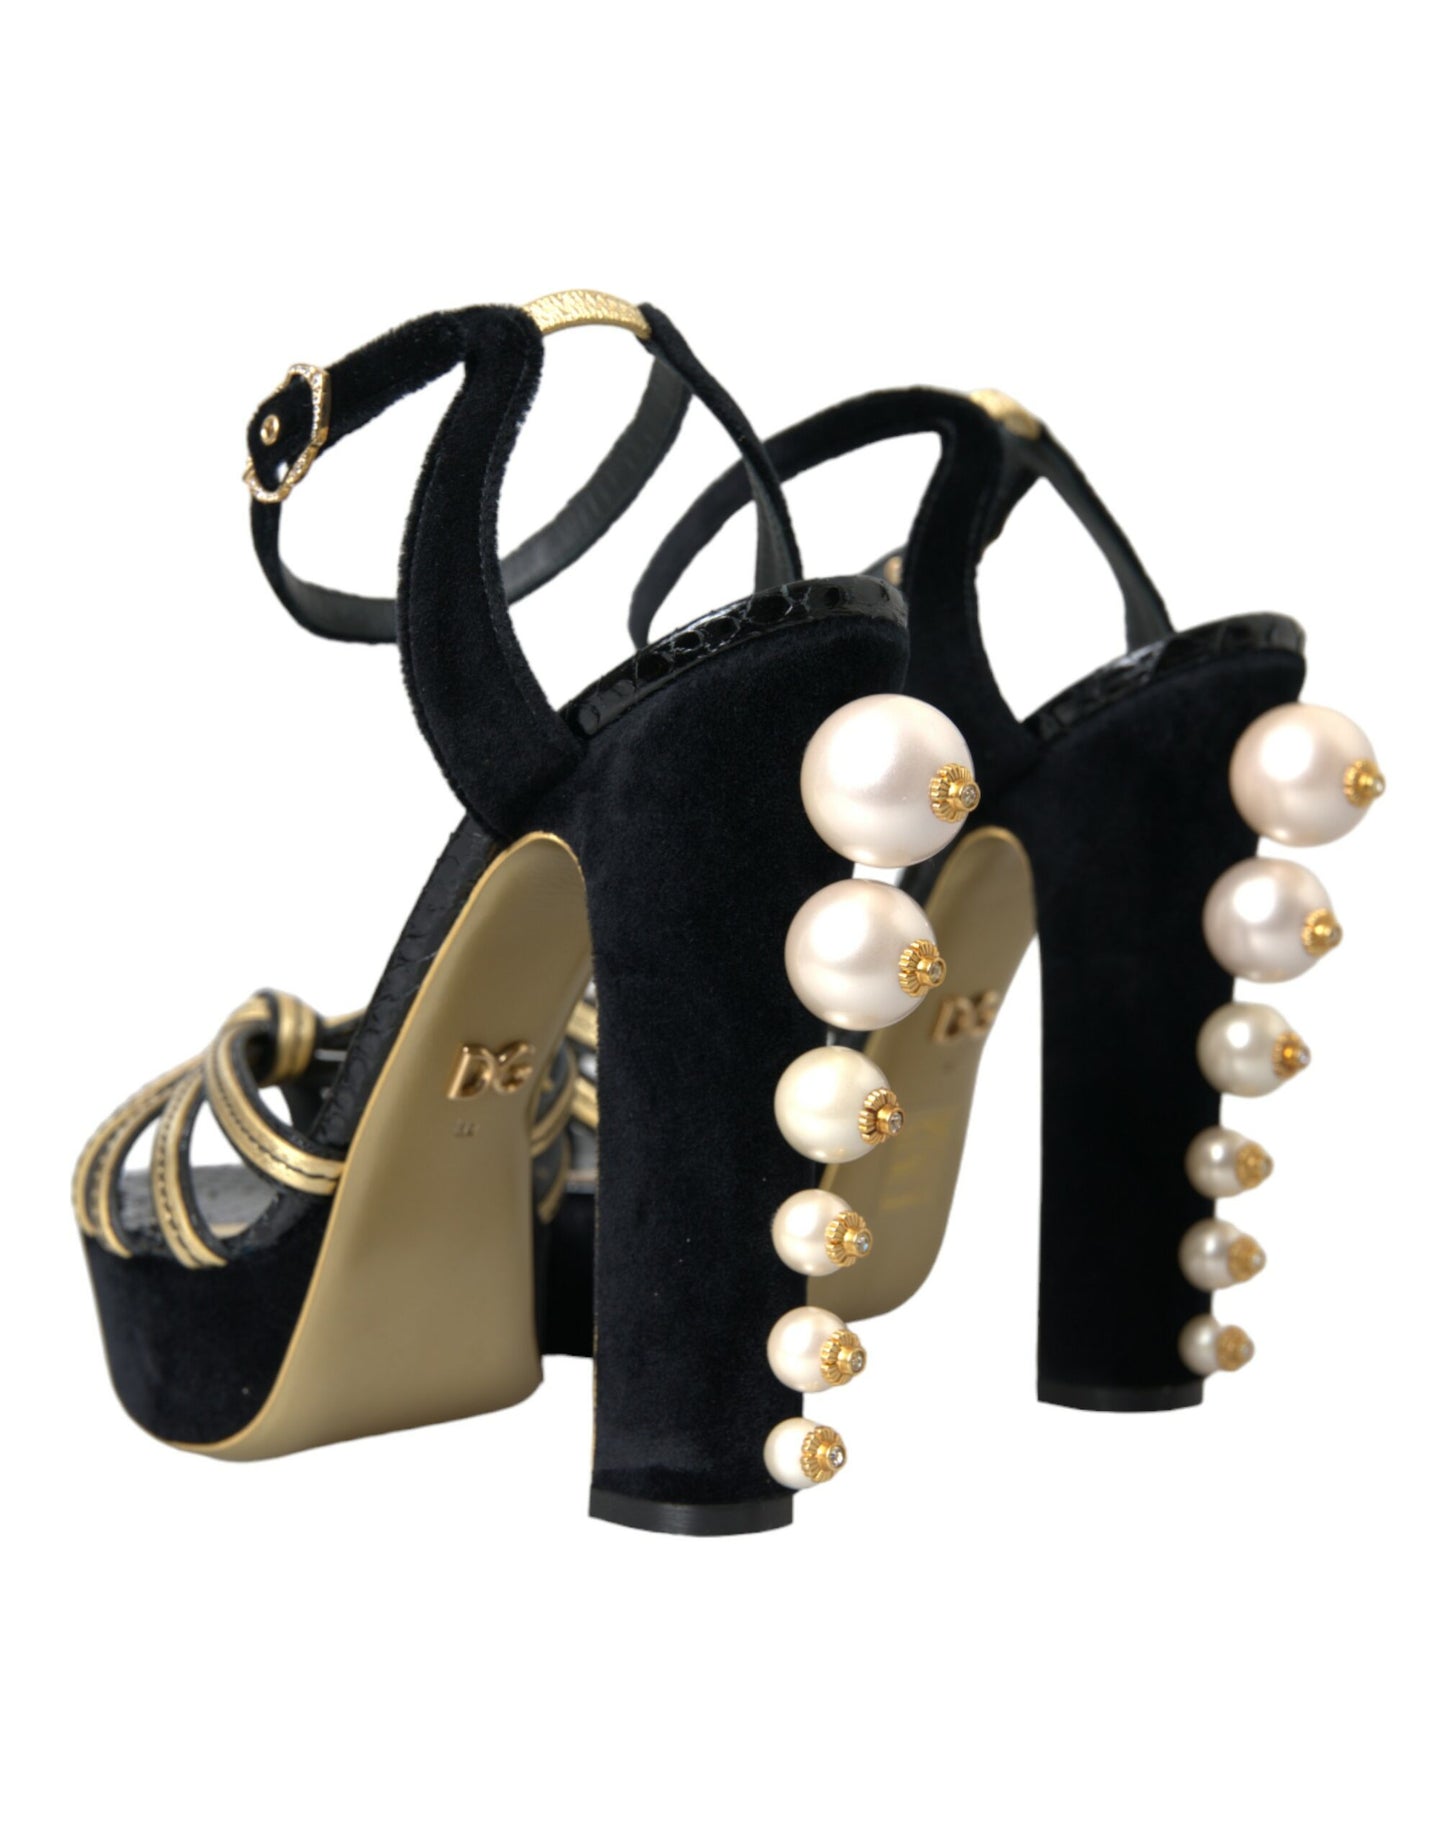 Dolce & Gabbana Black Gold Embellished Heels Sandals Shoes